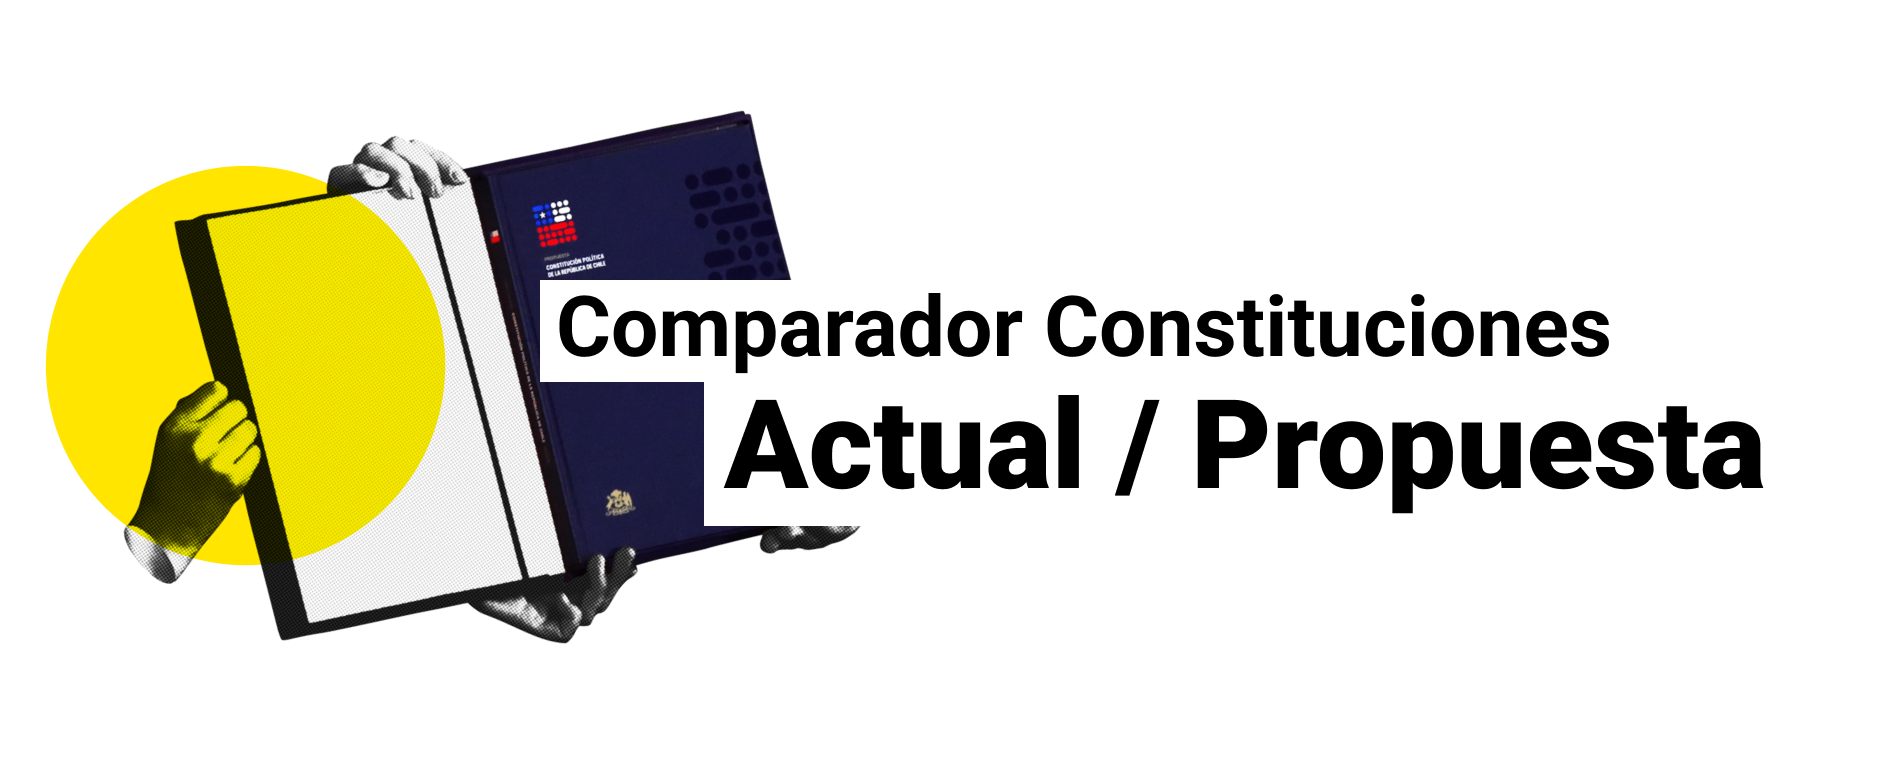 Comparador constituciones: Actual / Propuesta